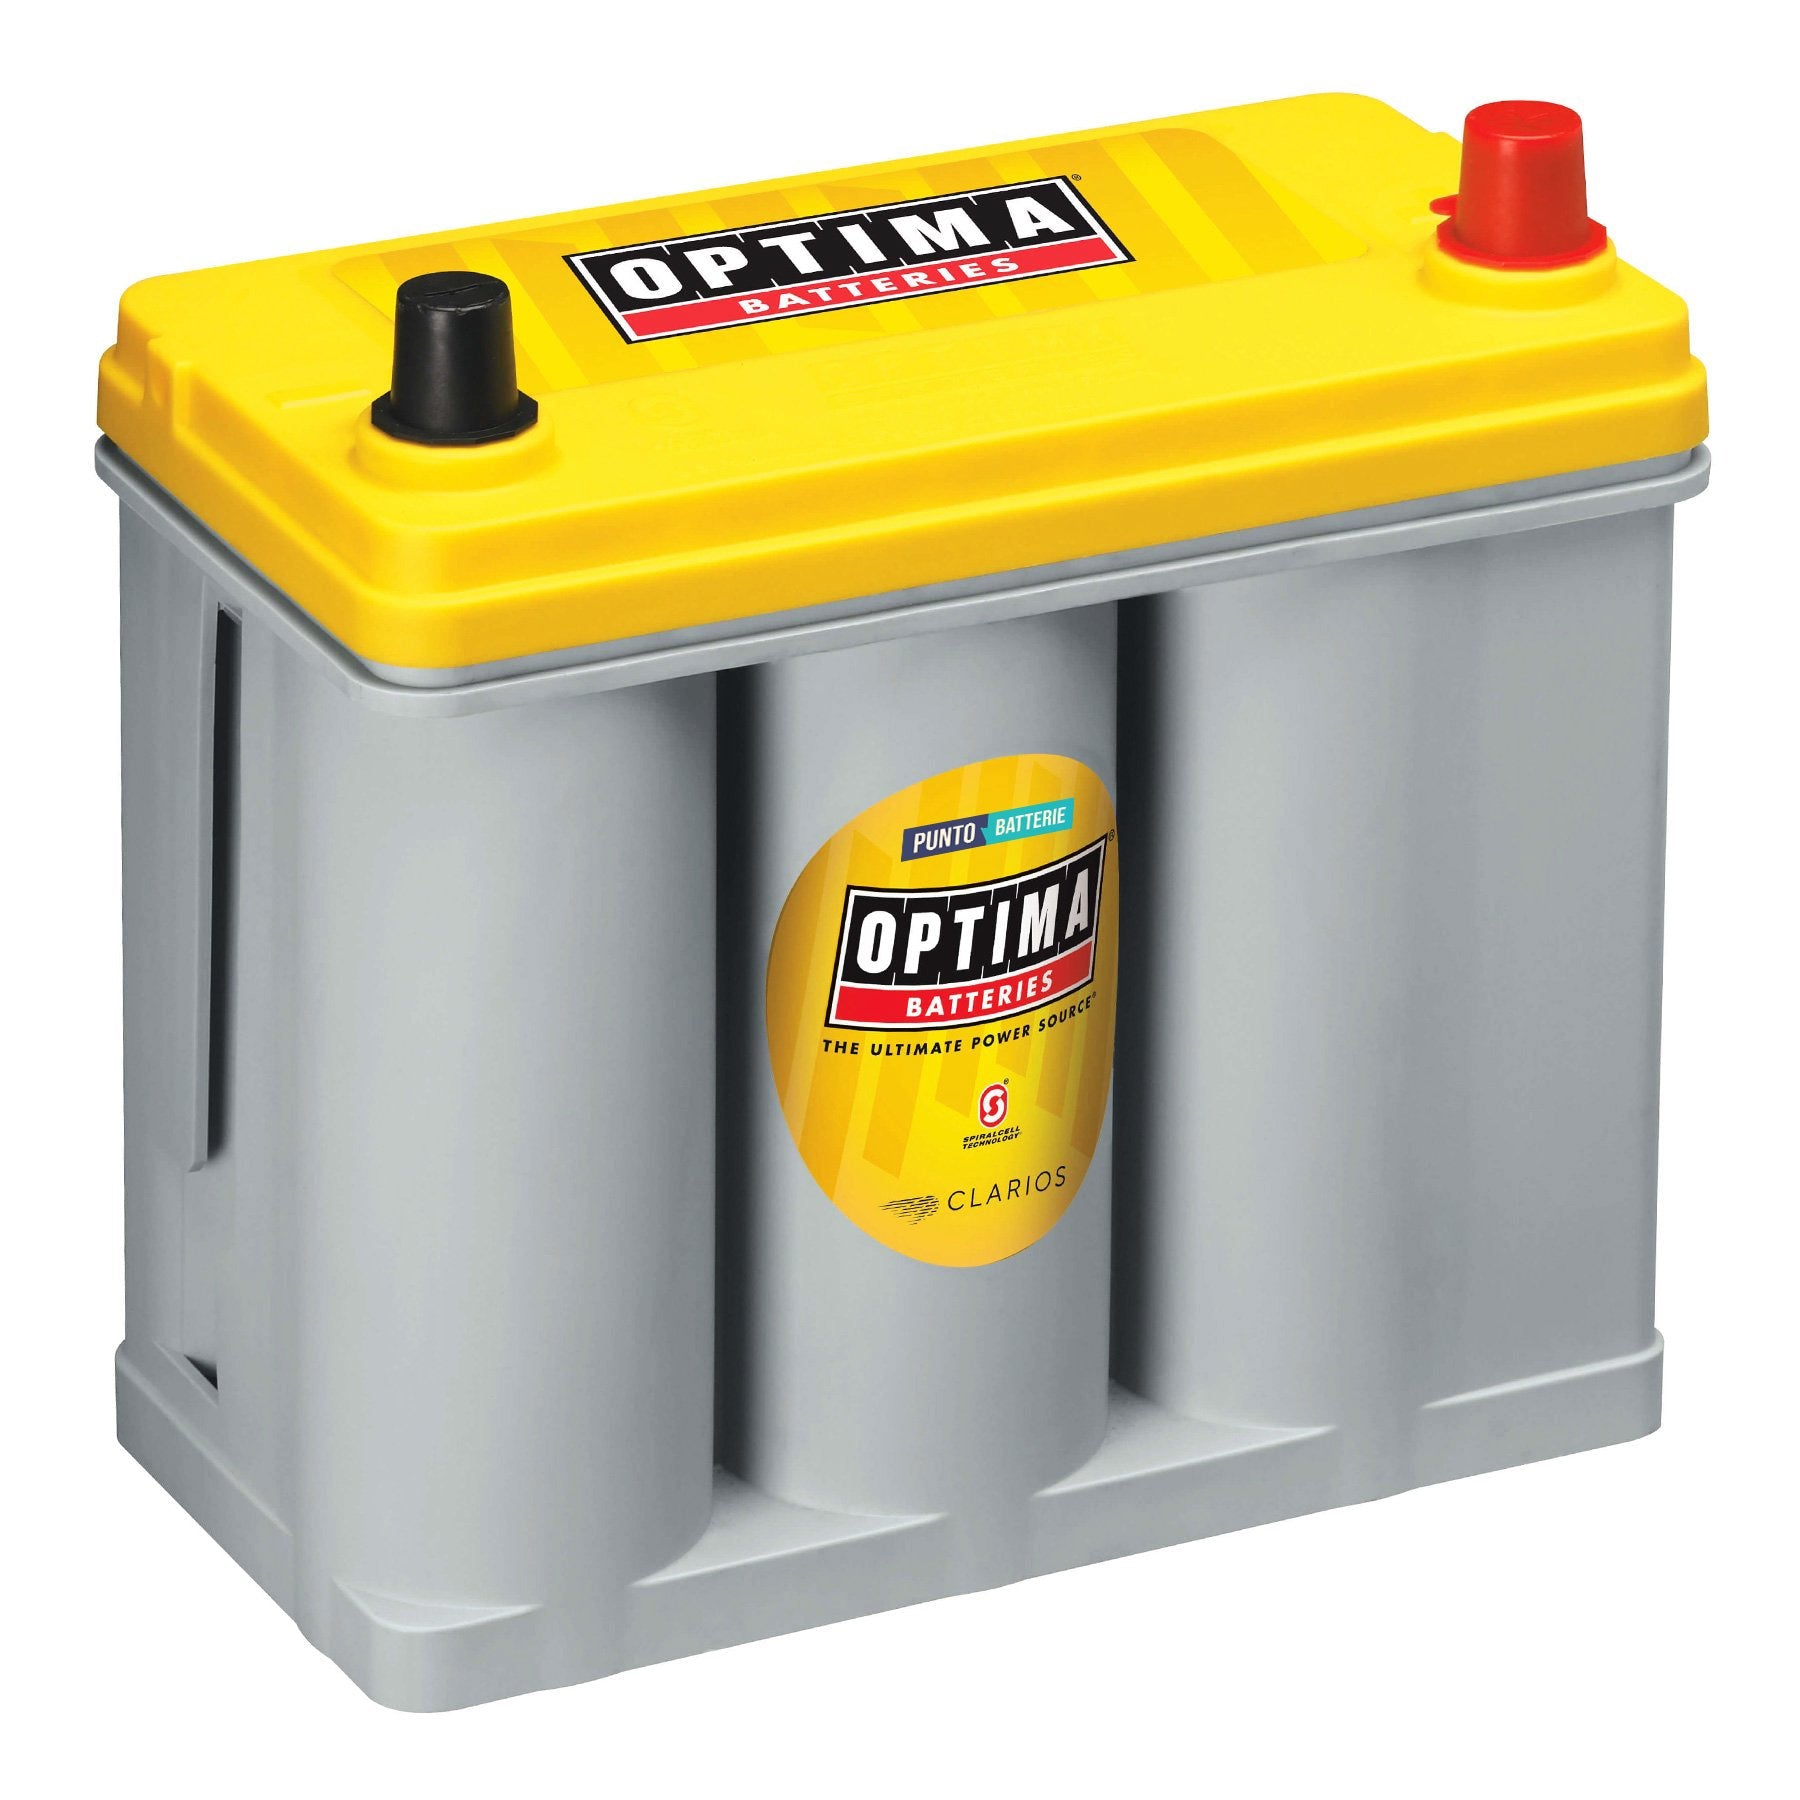 Batteria originale Optima Yellow Top YT R 2,7 J, dimensioni 237 x 129 x 227, polo positivo a destra, 12 volt, 38 amperora, 460 ampere, AGM. Batteria per veicoli e per l'alimentazione di servizi.